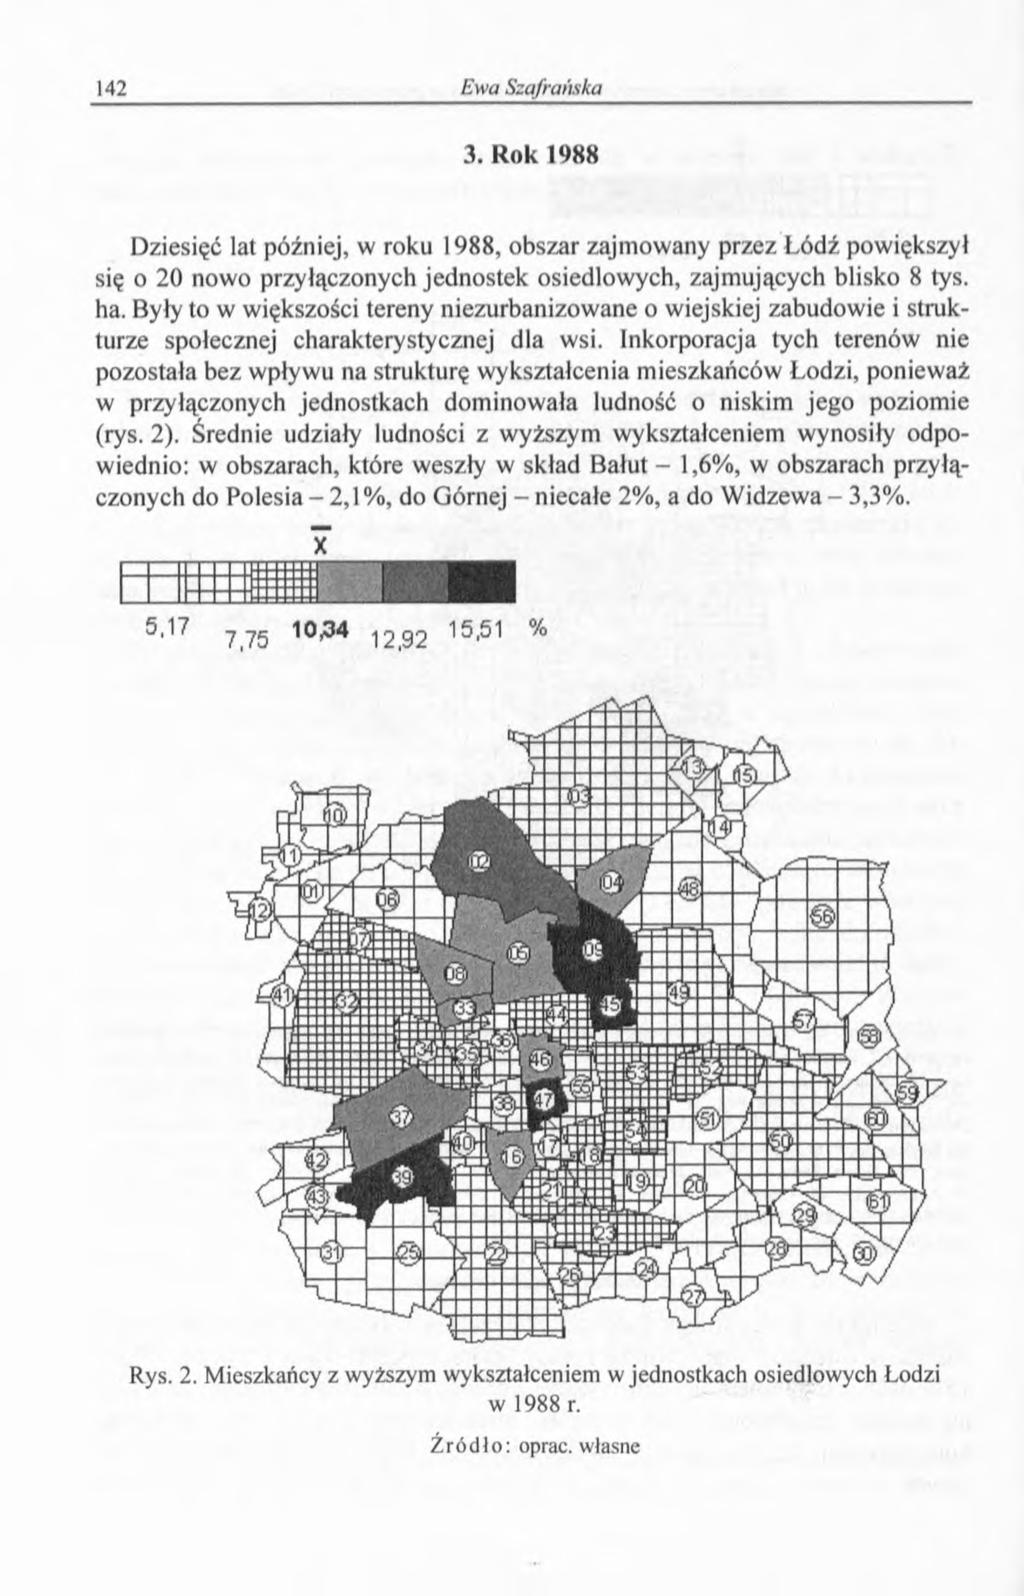 3. Rok 1988 Dziesięć lat później, w roku 1988, obszar zajmowany przez Łódź powiększył się o 20 nowo przyłączonych jednostek osiedlowych, zajmujących blisko 8 tys. ha.